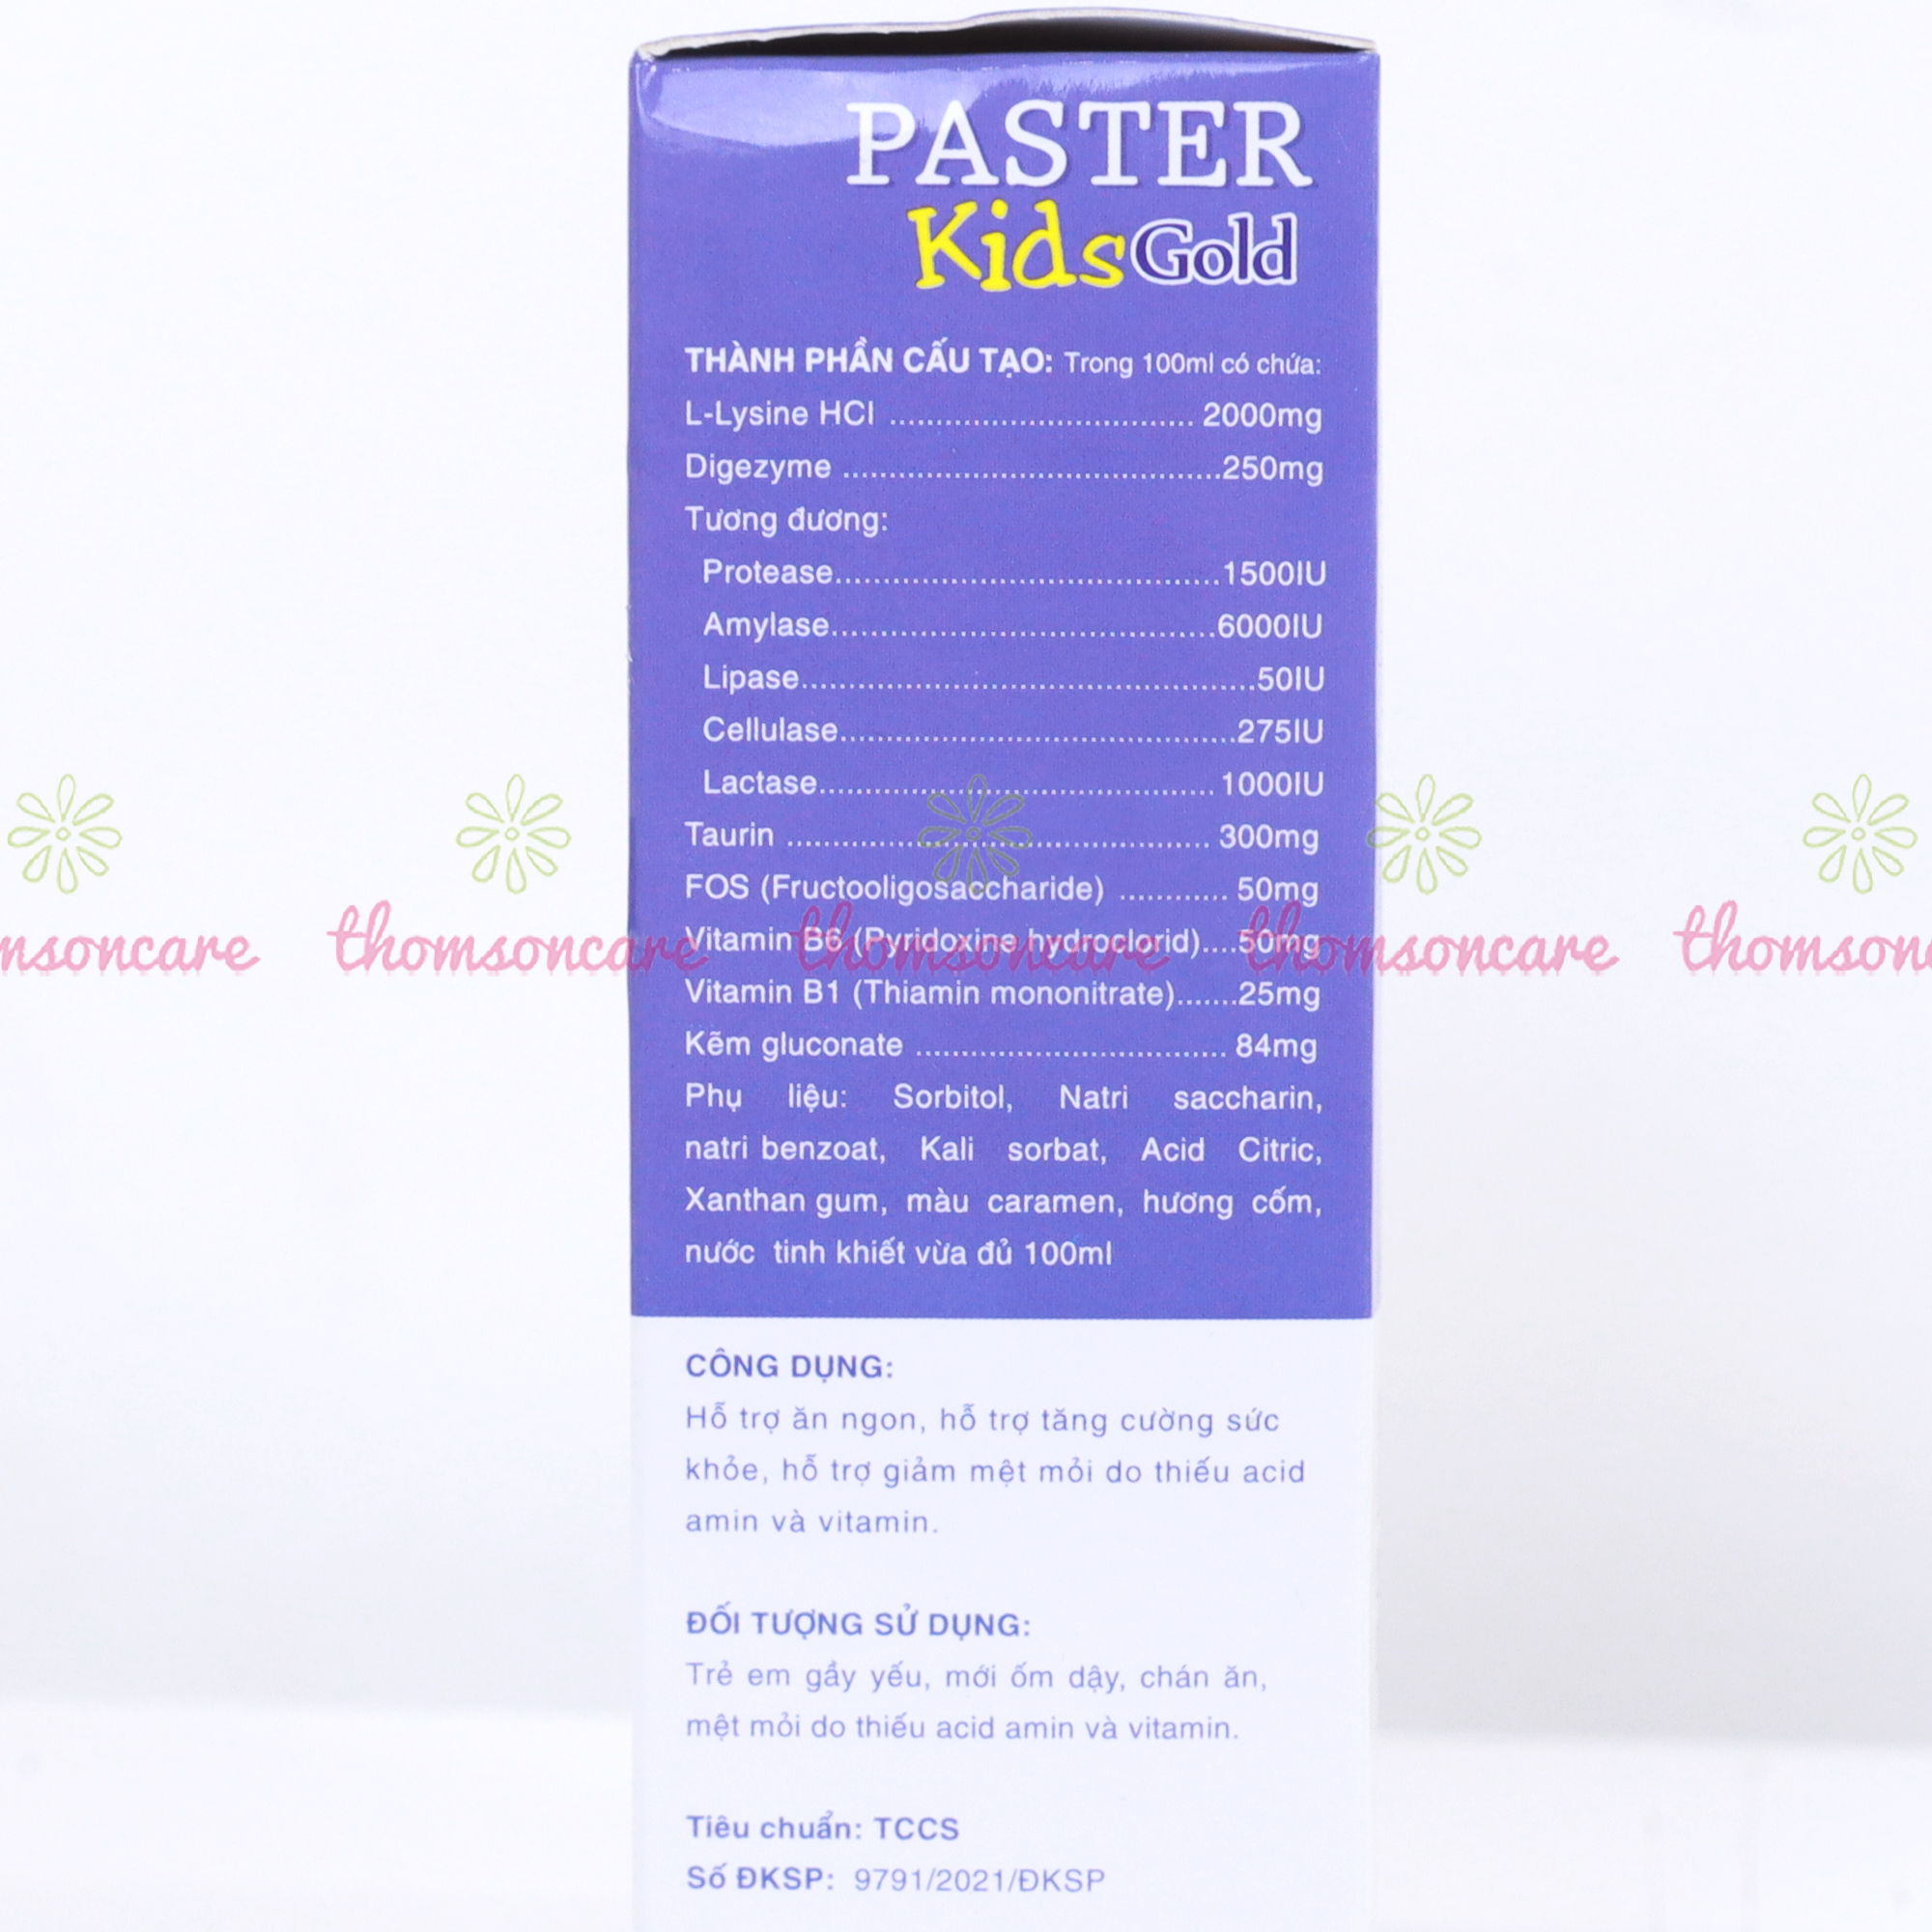 Siro ăn ngon Paster Kids Gold ống sanofia- Hỗ trợ tăng sức đề kháng, ăn ngon miệng, giảm rối loạn tiêu hóa - Hộp 20 ống x 10ml Thomsoncare